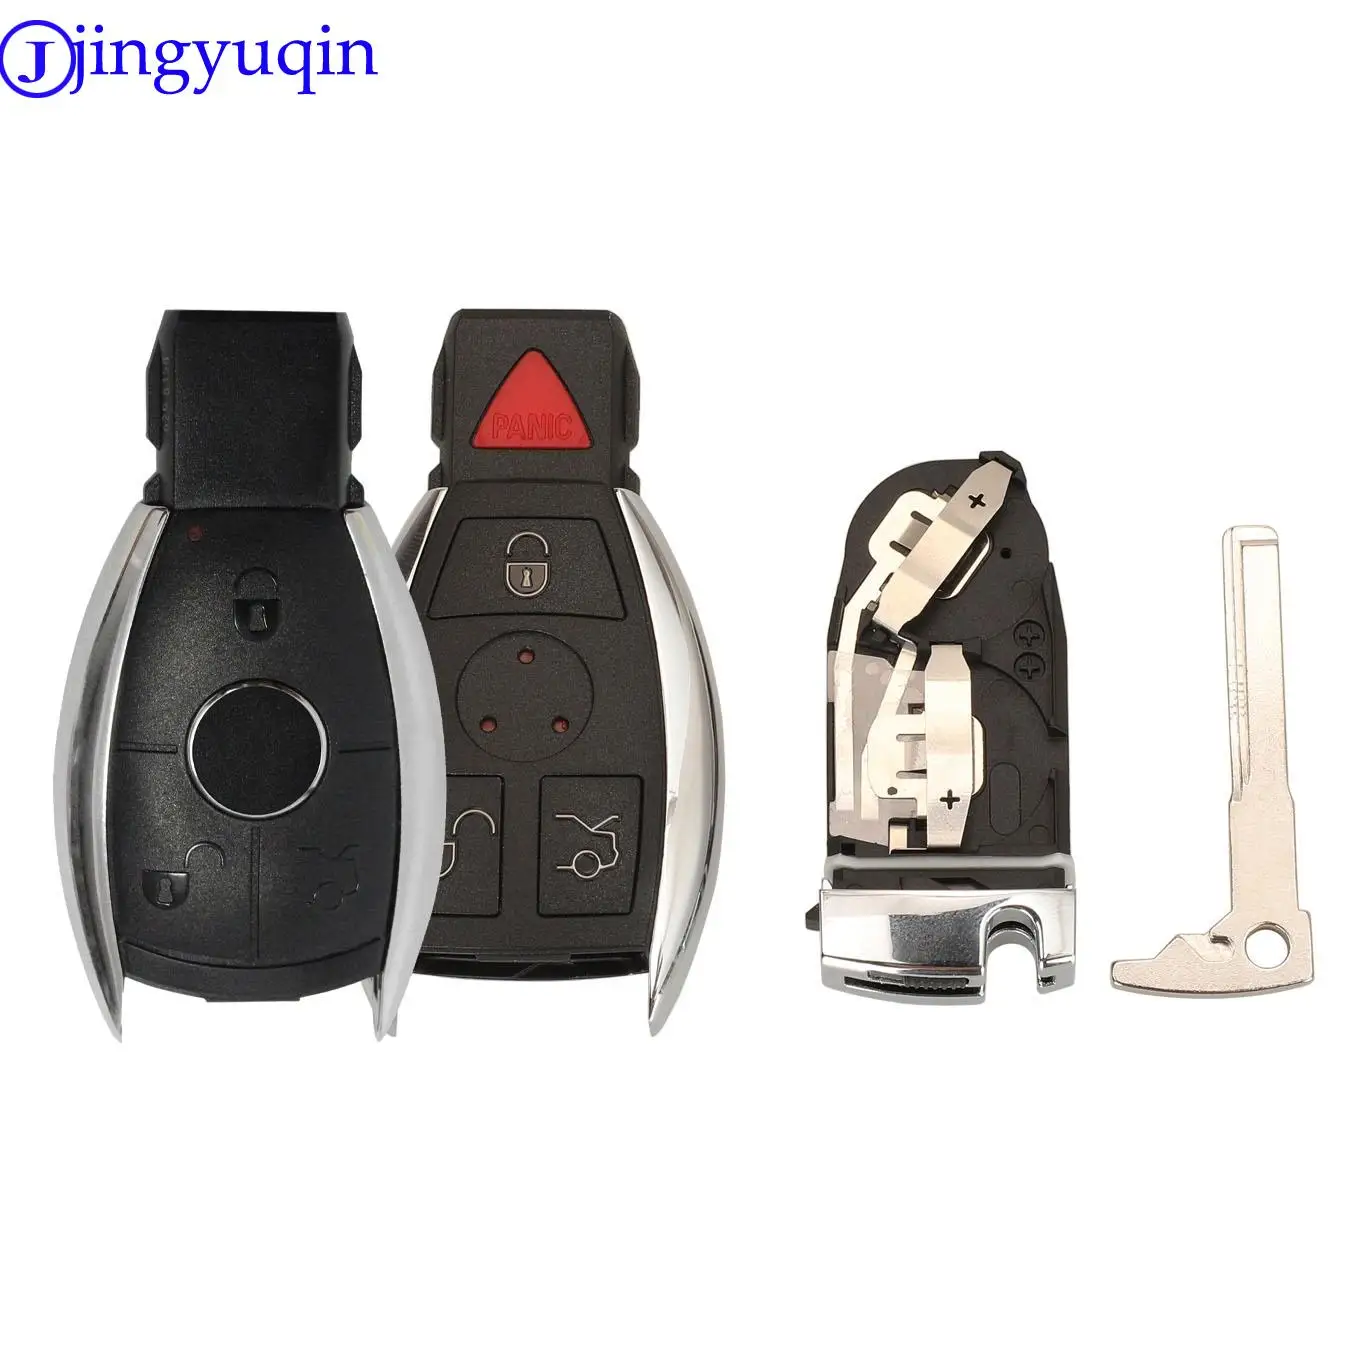 jingyuqin 3 Buttons Smart Remote Car Key Shell For Mercedes Benz BGA NEC C E R S CL GL SL CLK SLK Remote Key Fob